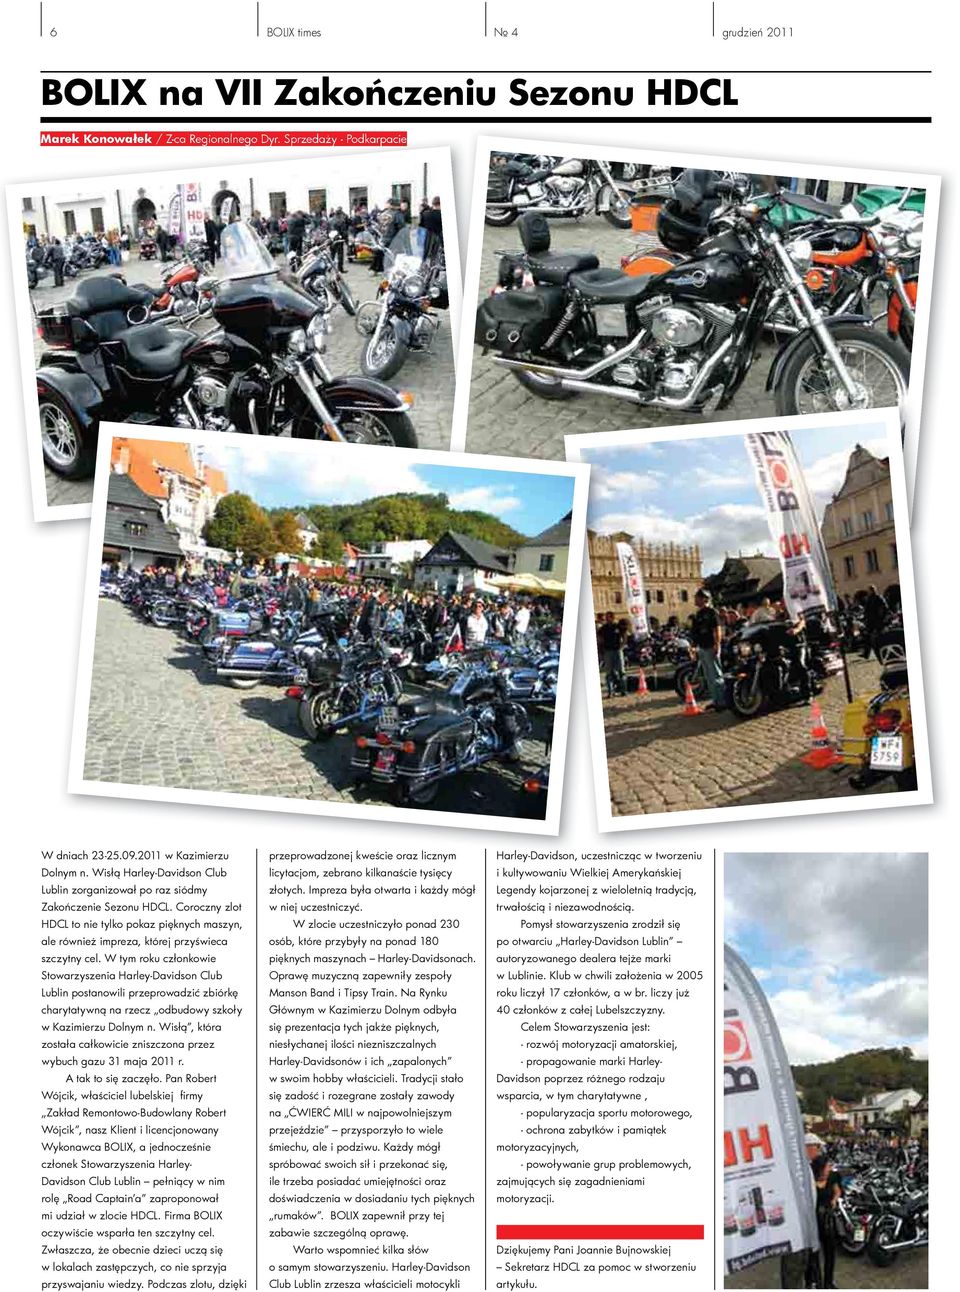 W tym roku członkowie Stowarzyszenia Harley-Davidson Club Lublin postanowili przeprowadzić zbiórkę charytatywną na rzecz odbudowy szkoły w Kazimierzu Dolnym n.